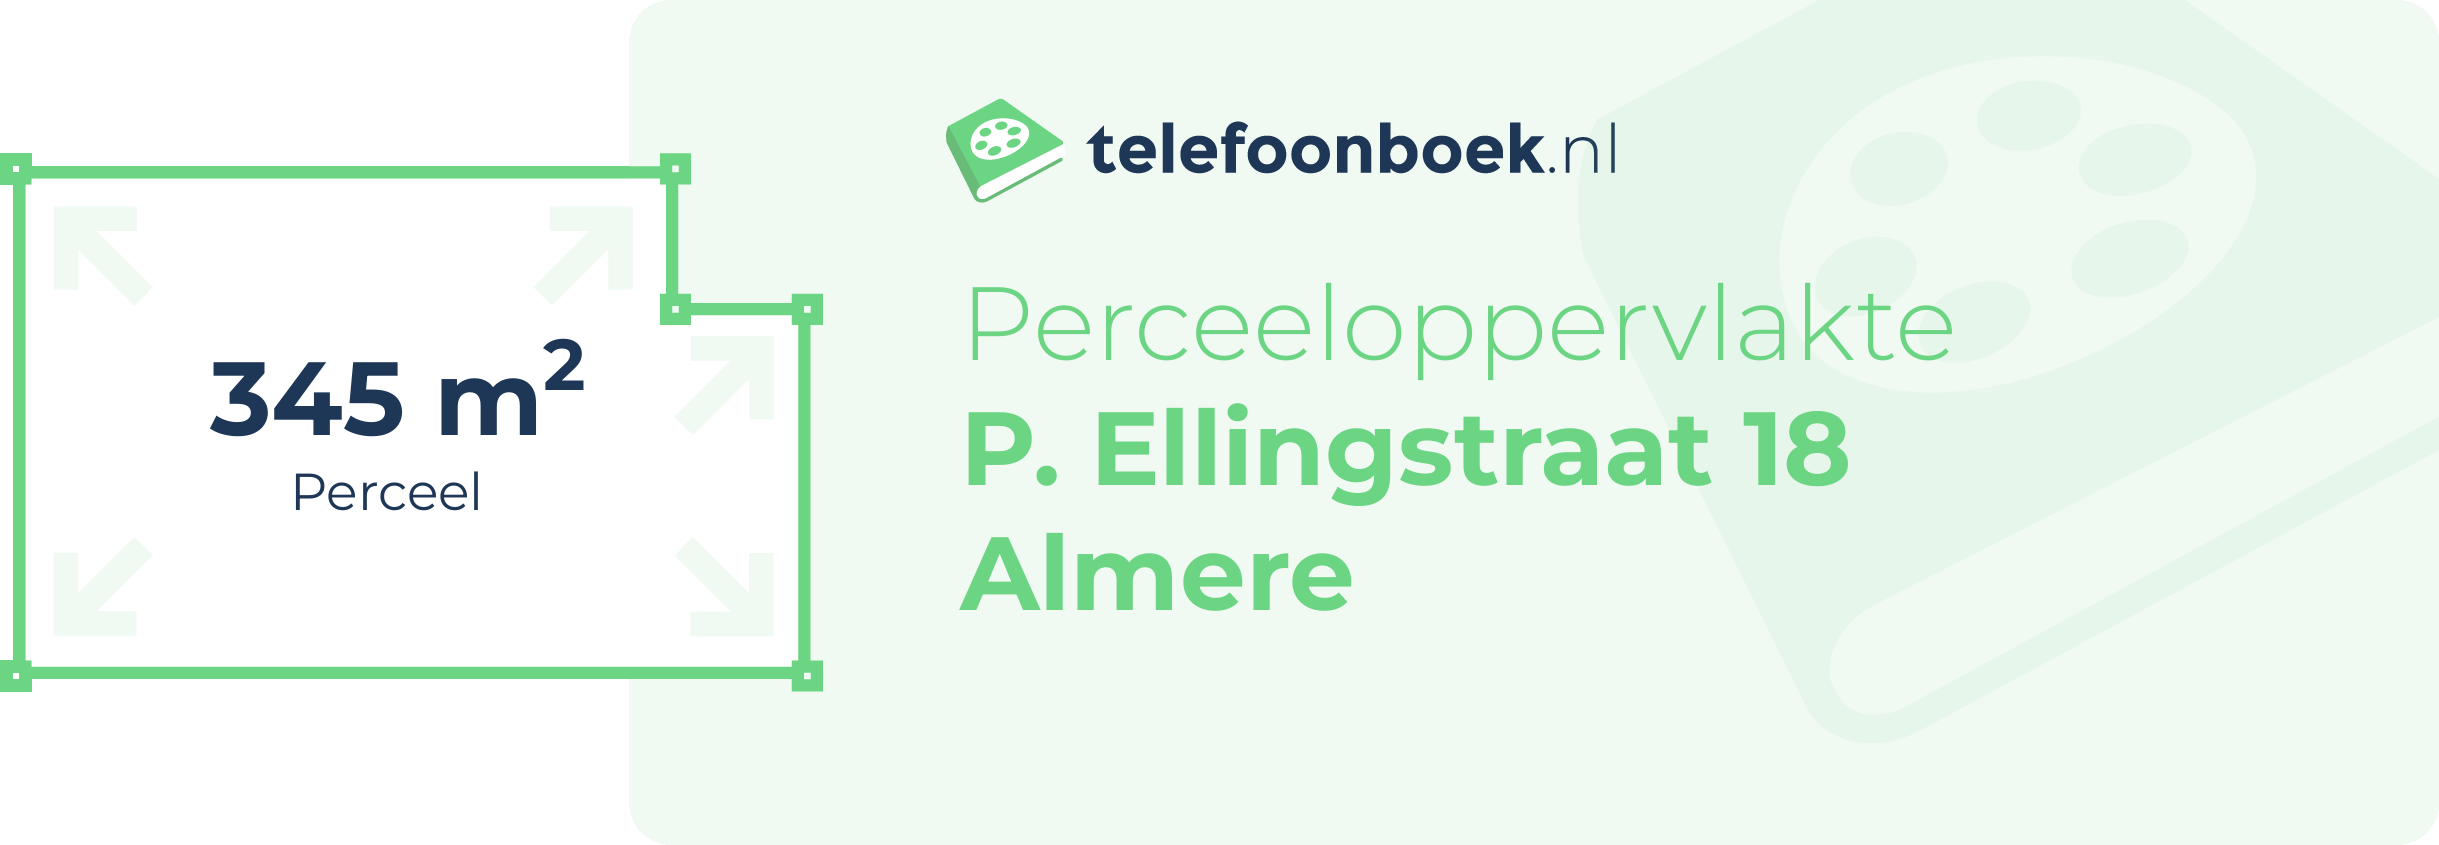 Perceeloppervlakte P. Ellingstraat 18 Almere